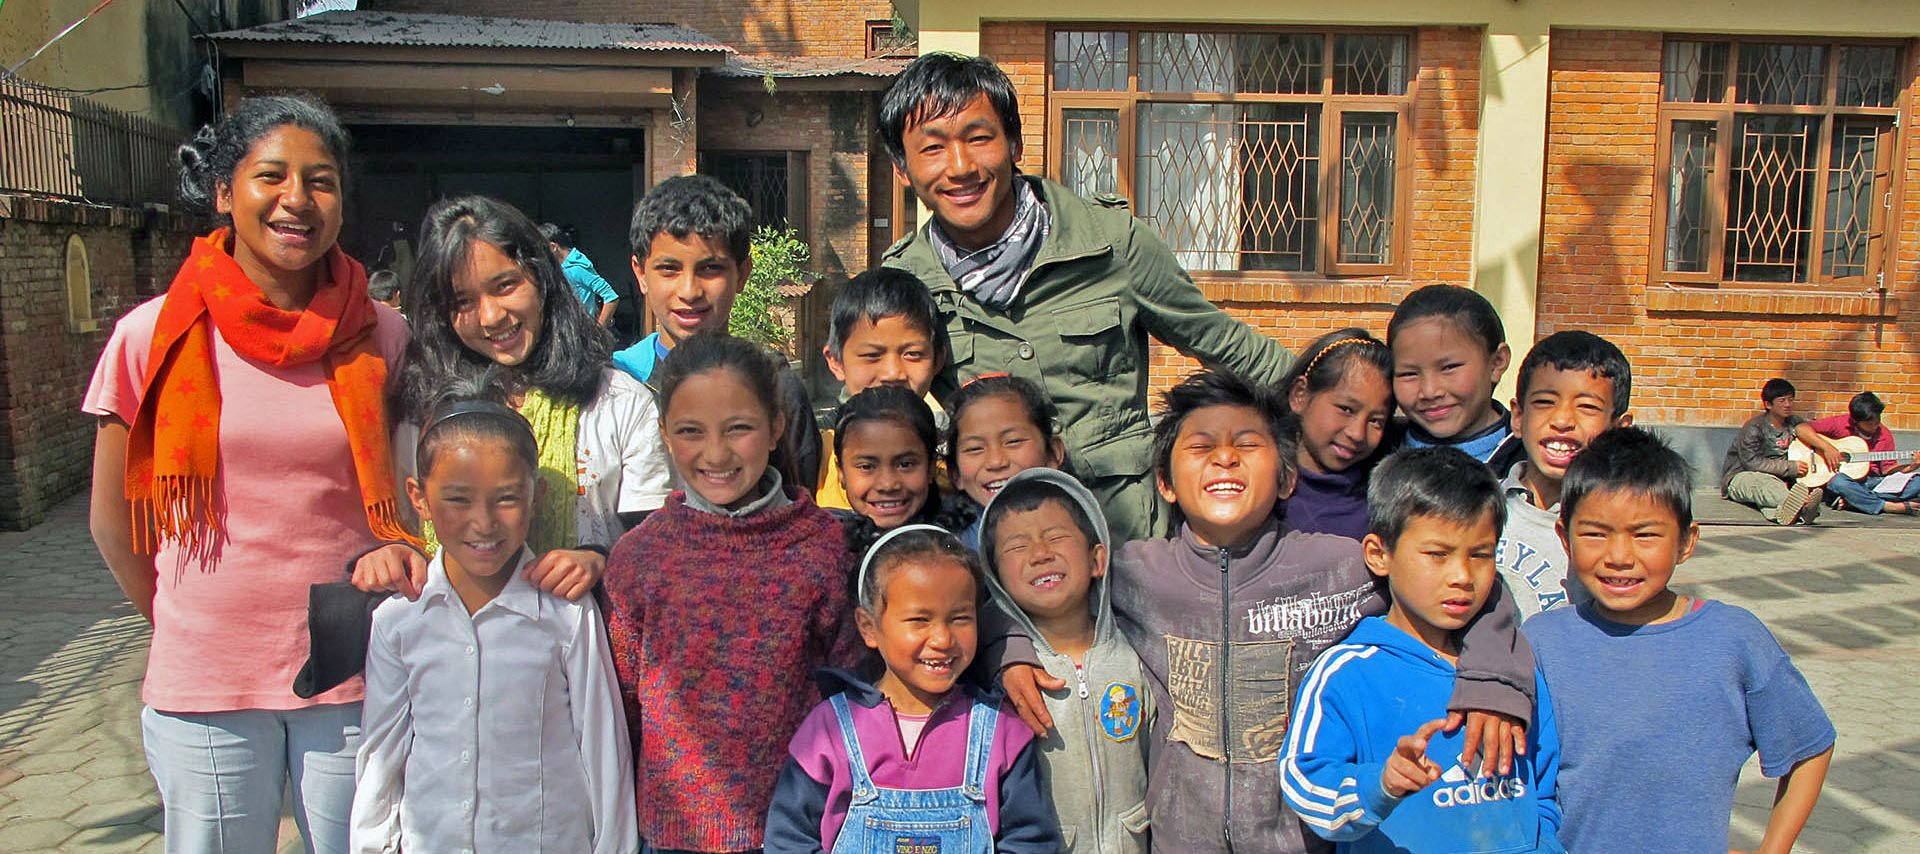 Wymiana międzykulturowa dla dziec Polska-Nepal